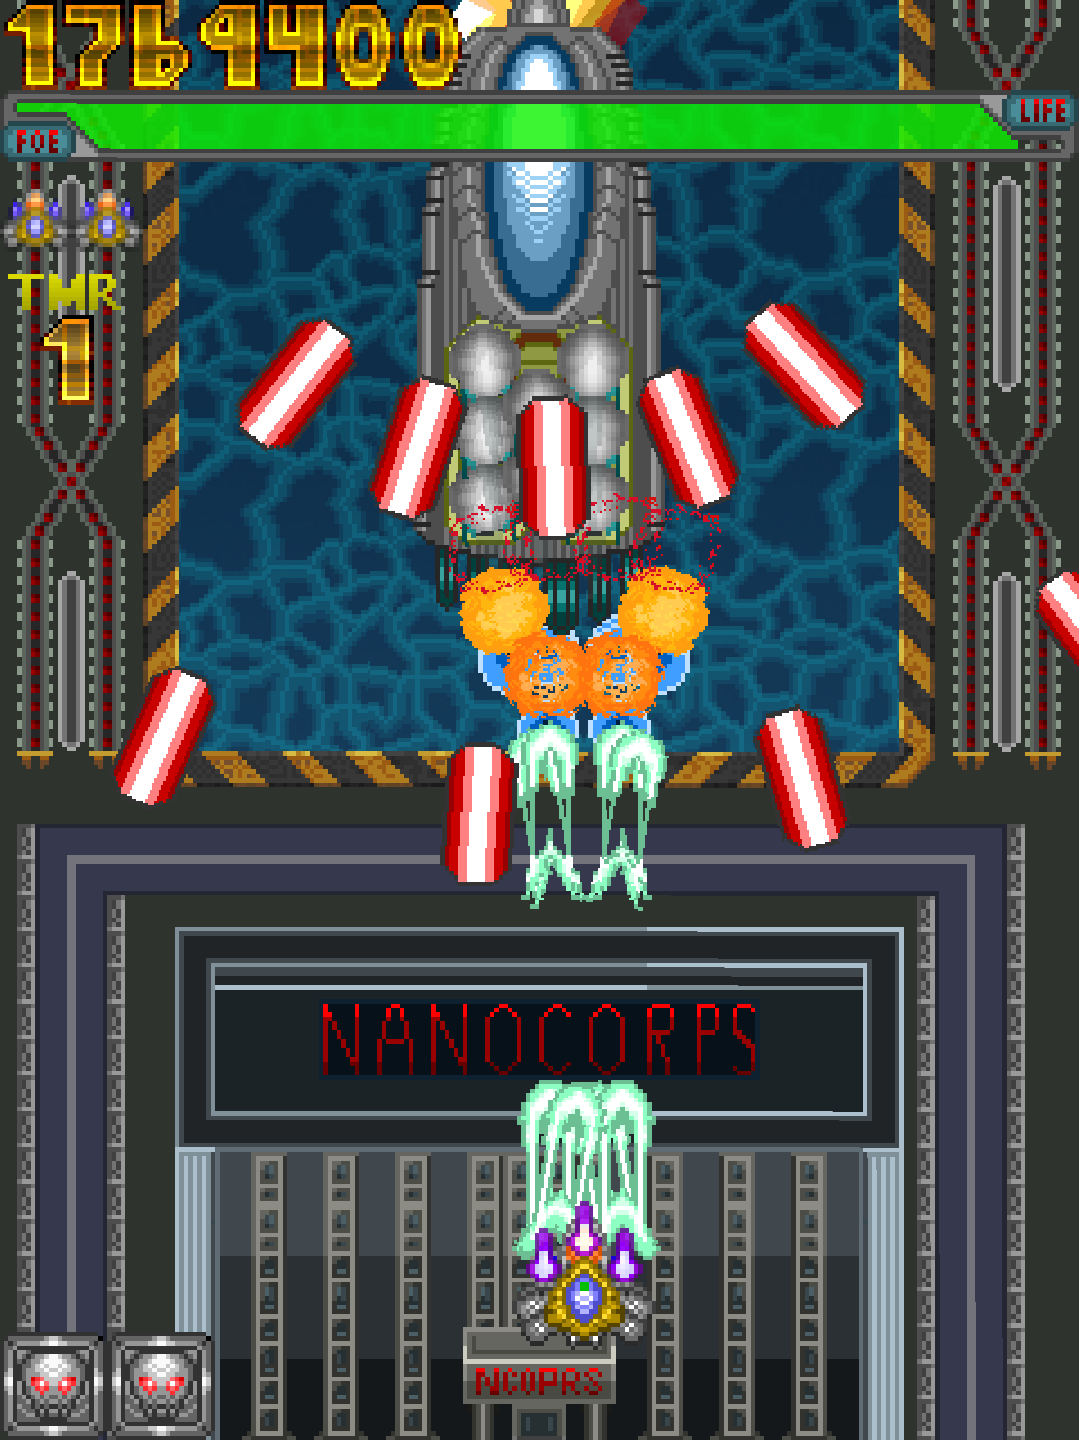 NANOCORPS